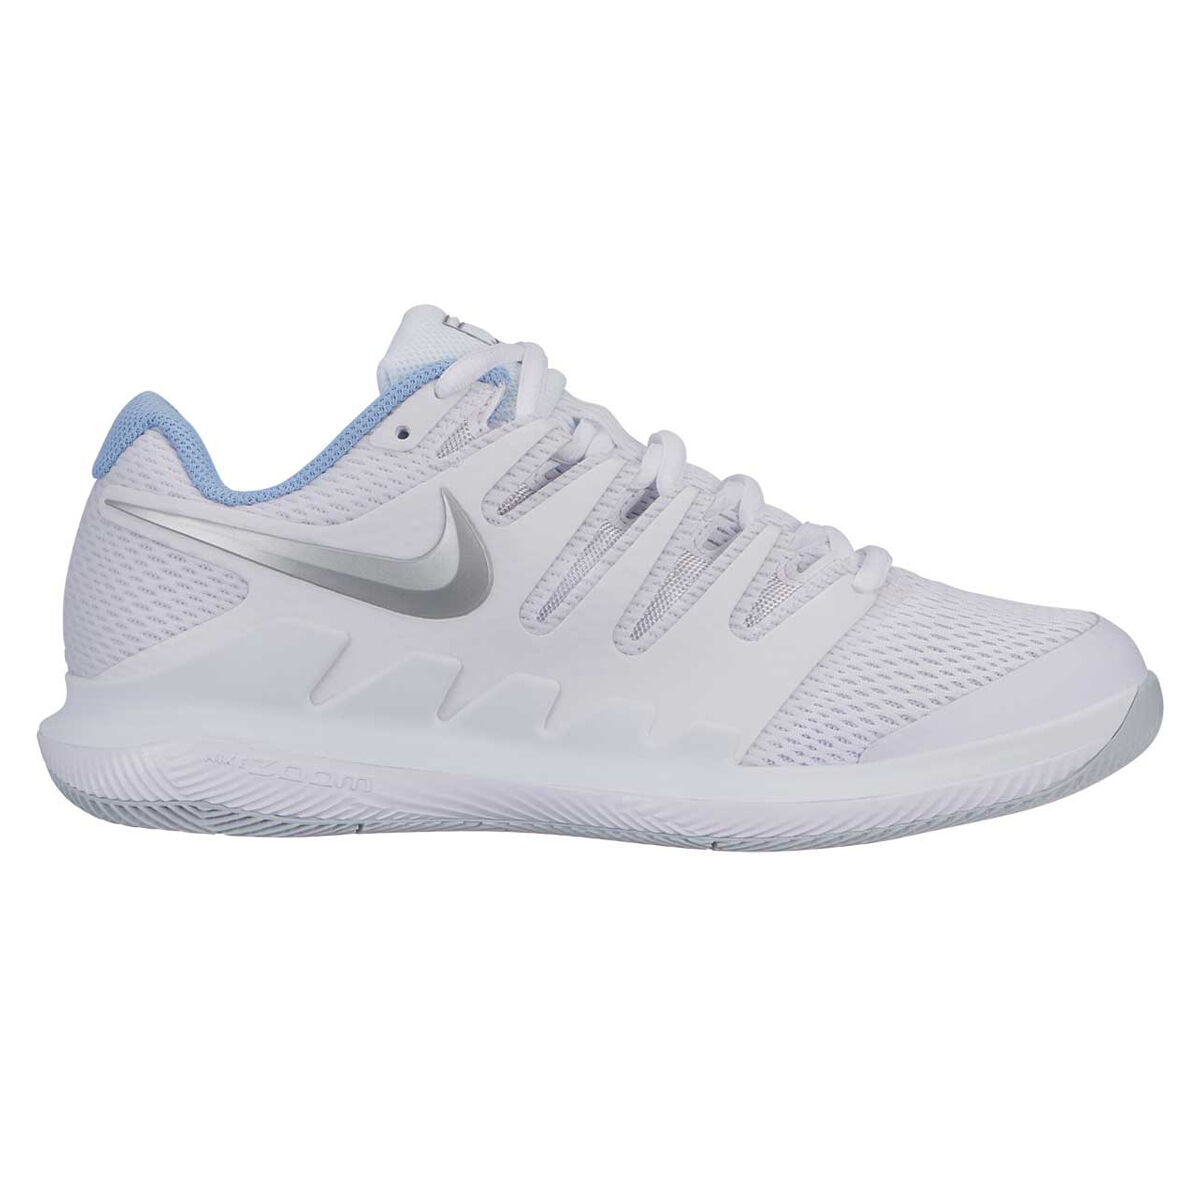 vapor tennis shoes